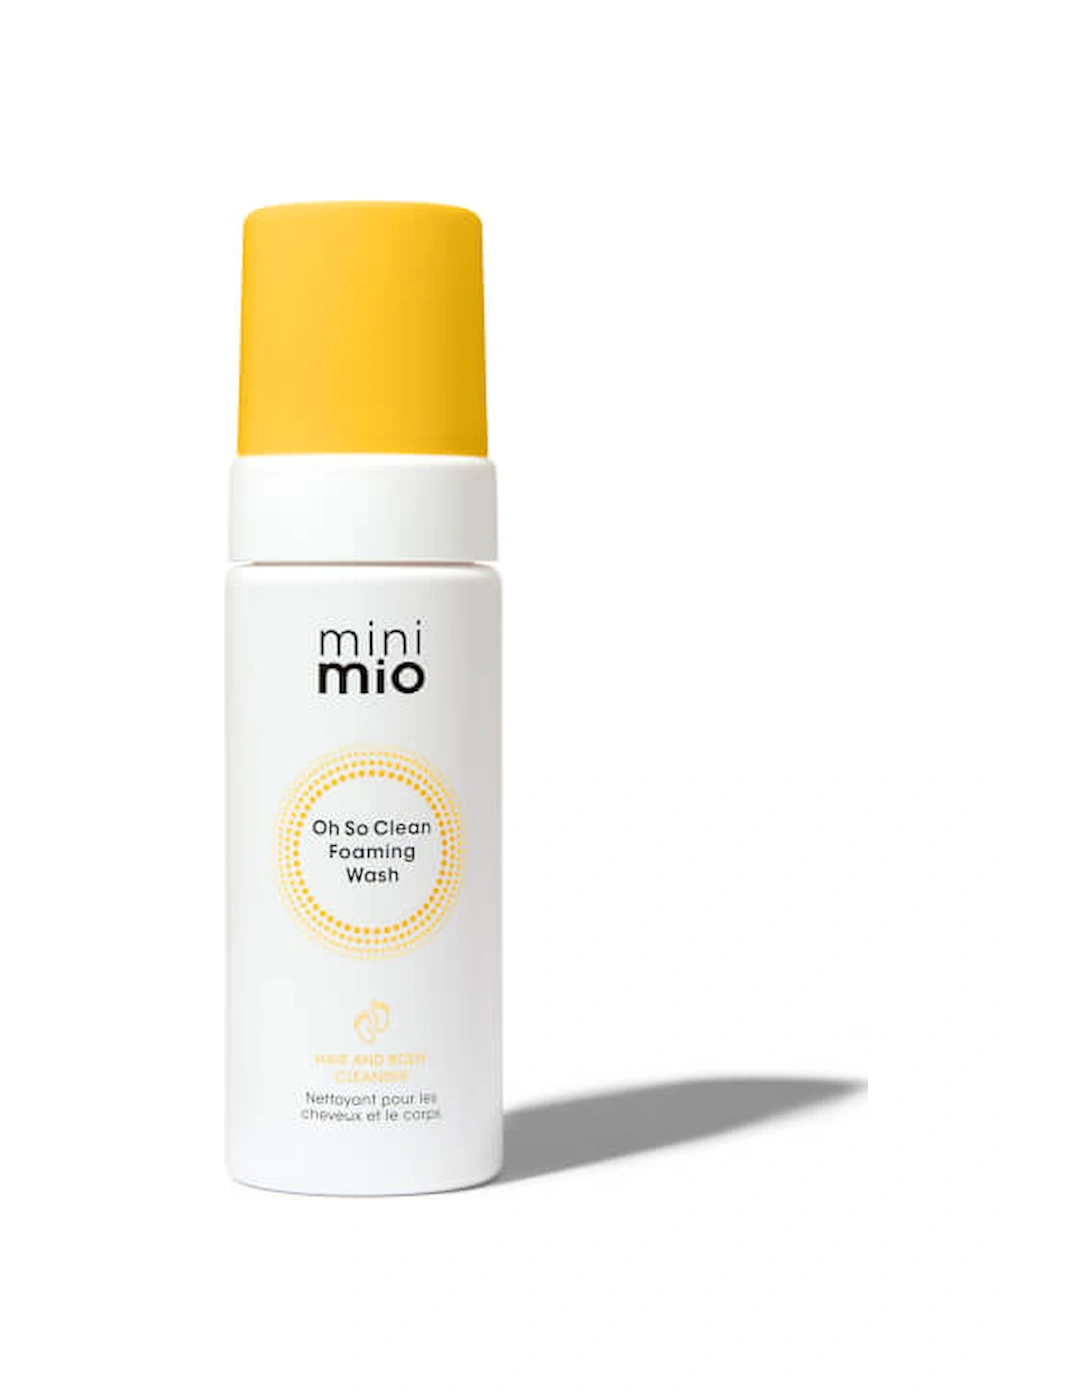 Mini Mio Oh So Clean Foaming Wash 150ml - Mama Mio, 2 of 1